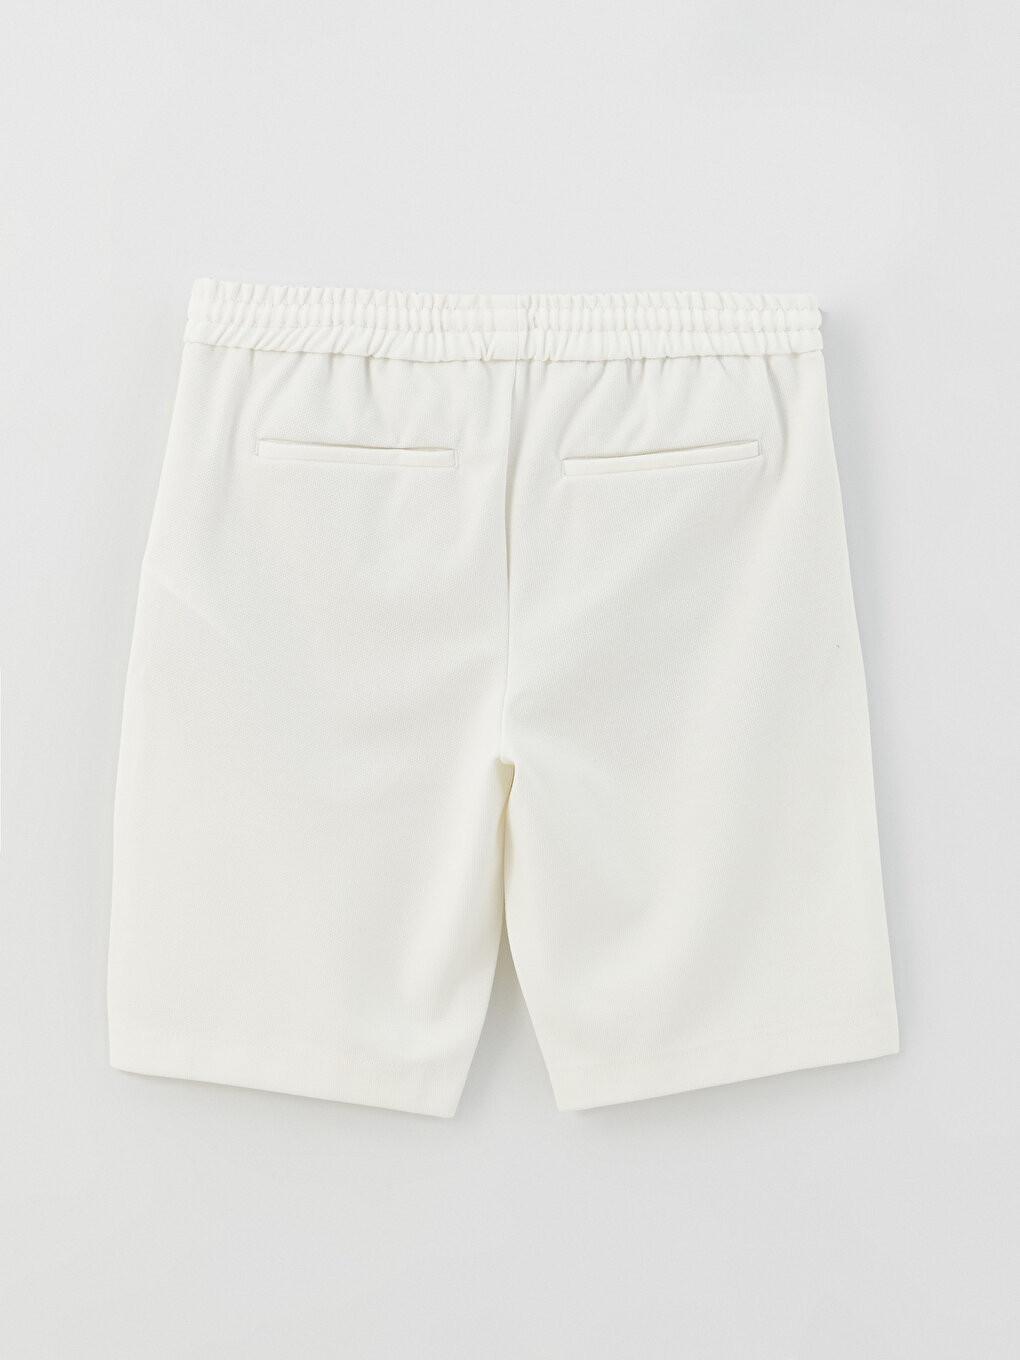 Slim Fit Binding Detail Men's Shorts -S39059Z8-V33 - S39059Z8-V33 - LC ...